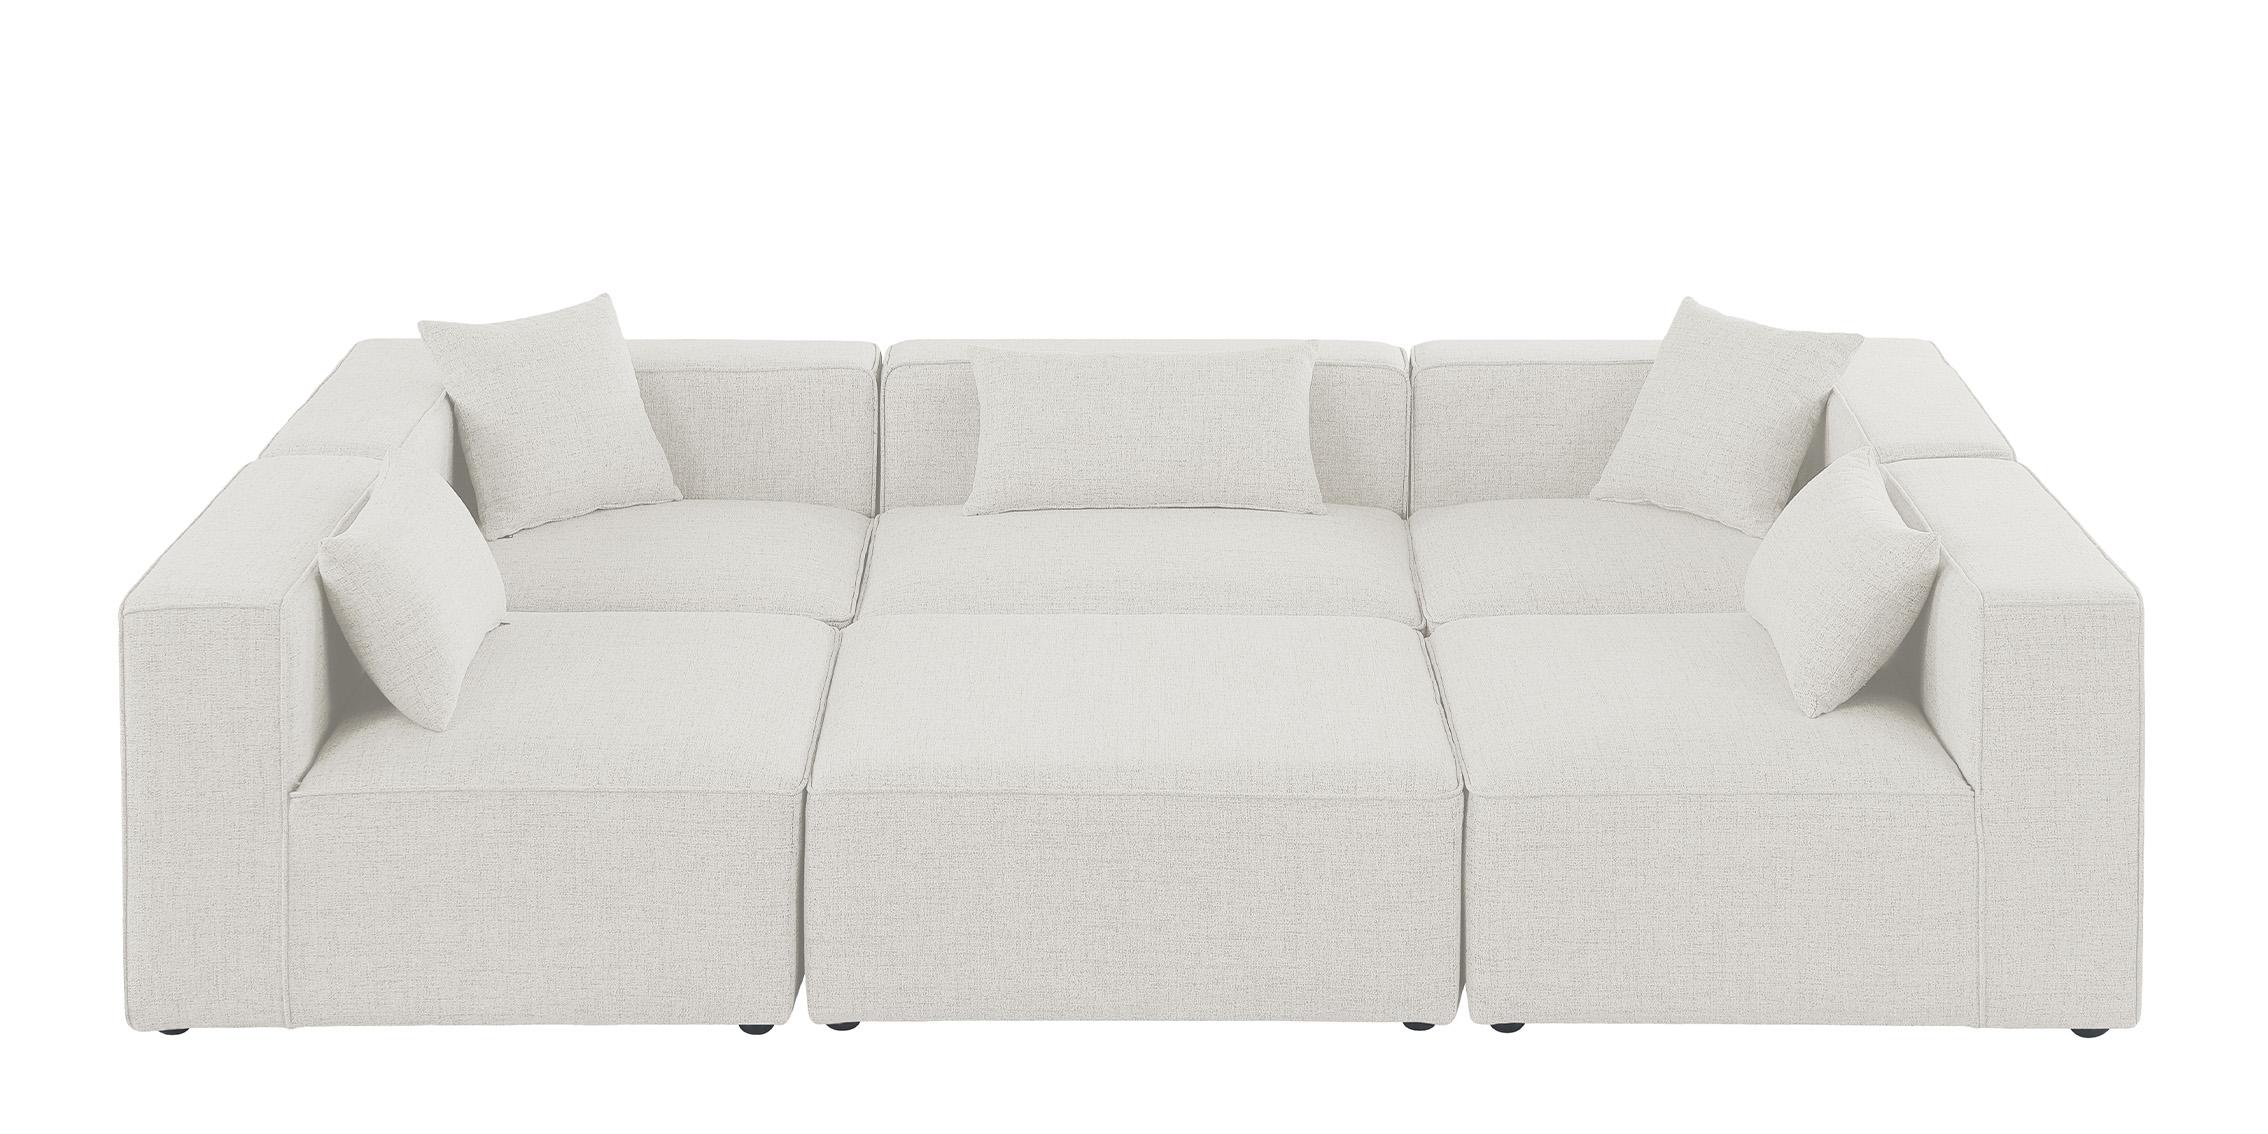 

    
Meridian Furniture CUBE 630Cream-Sec6C Modular Sectional Sofa Cream 630Cream-Sec6C
